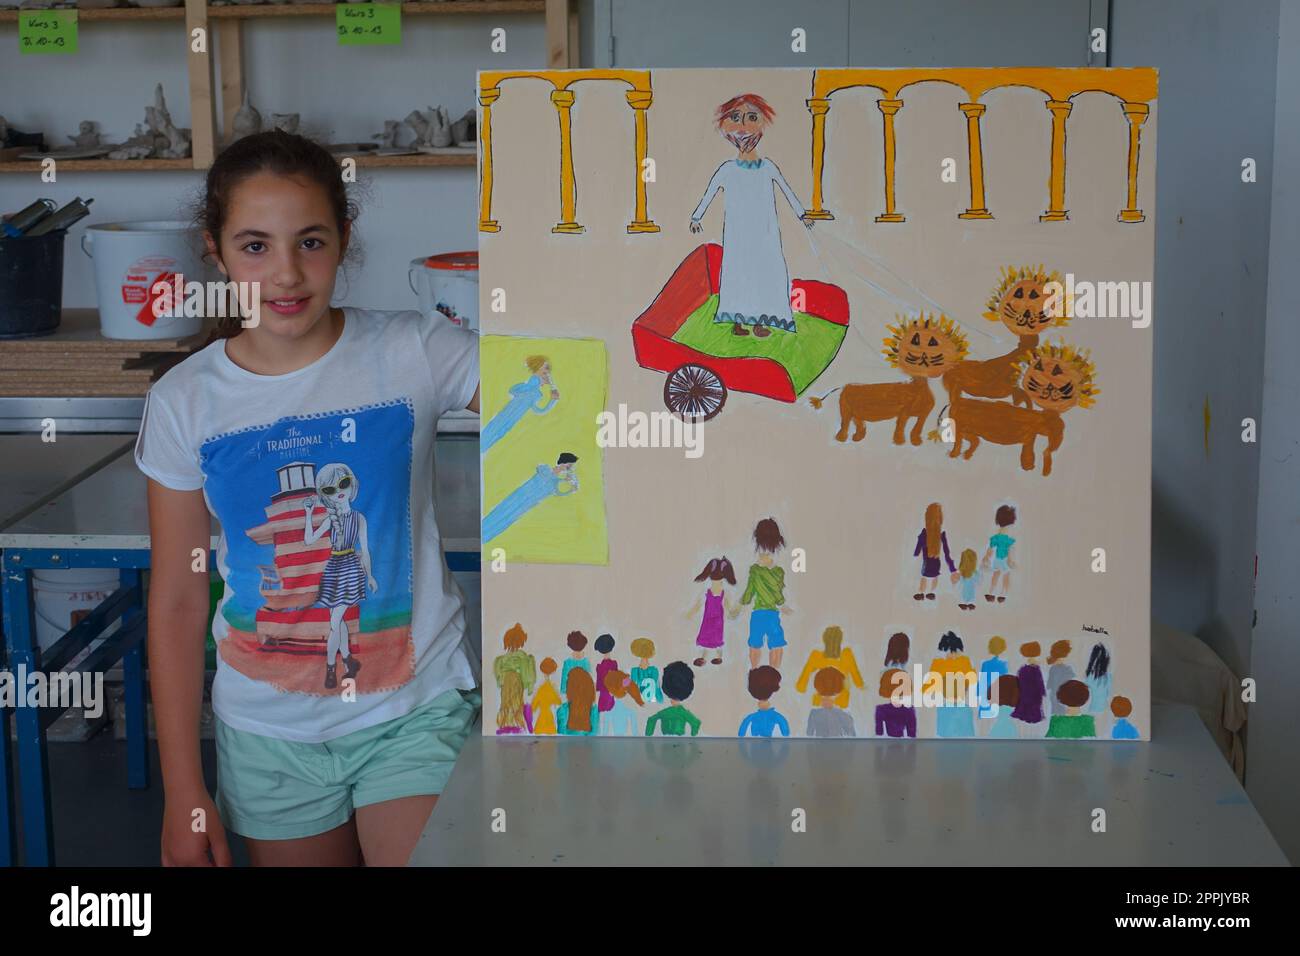 fille, 11 ans, sourire, heureux, yeux bruns, cheveux bruns, apprendre à dessiner, image auto-peinte Banque D'Images